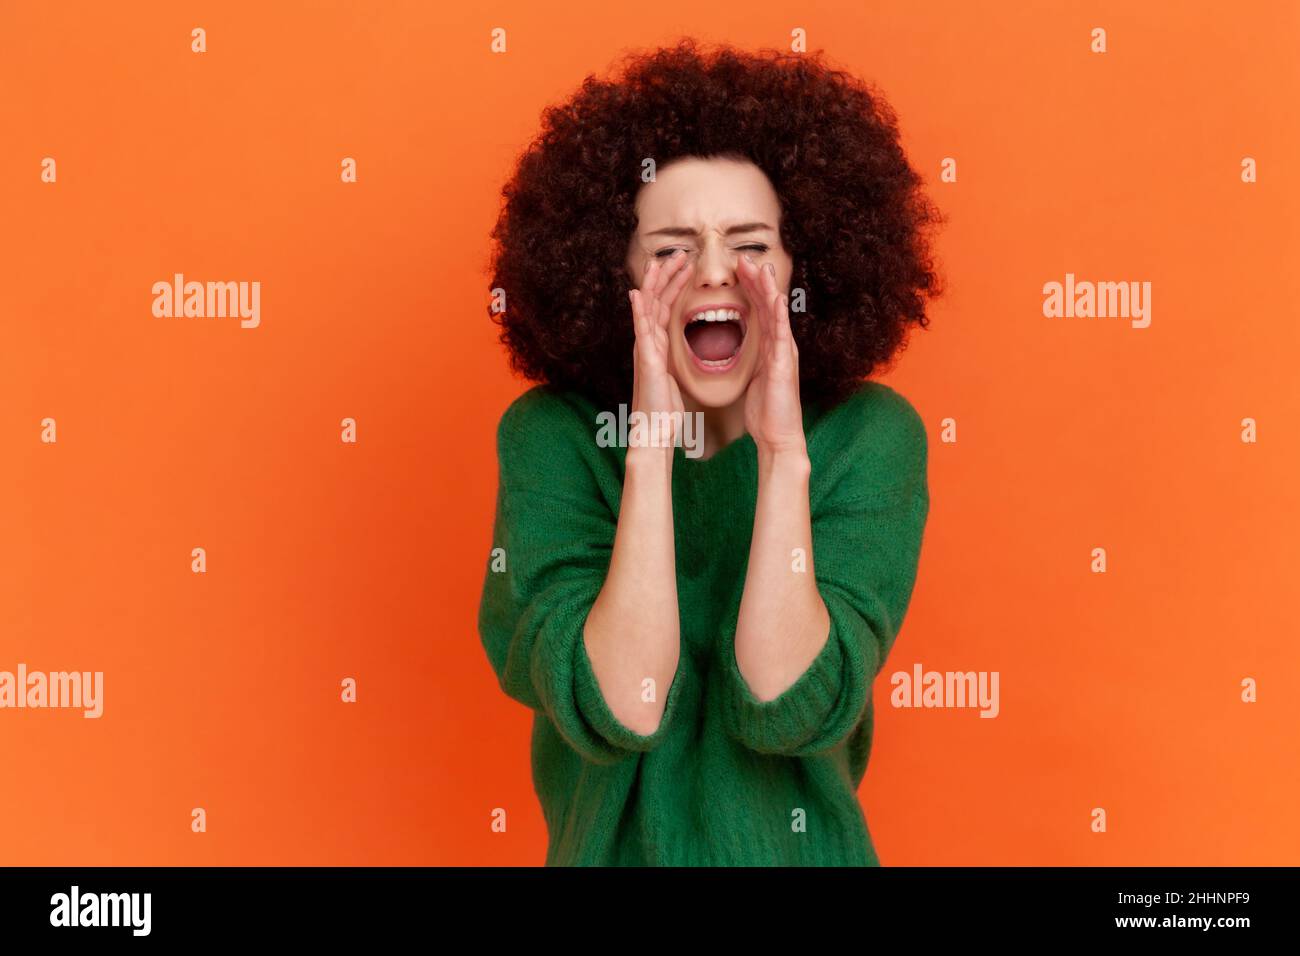 Porträt einer wütenden schreienden Frau mit Afro-Frisur, die einen grünen Pullover im lässigen Stil trägt, die Hände in der Nähe des Mundes hält und laut schreit. Innenaufnahme des Studios isoliert auf orangefarbenem Hintergrund. Stockfoto